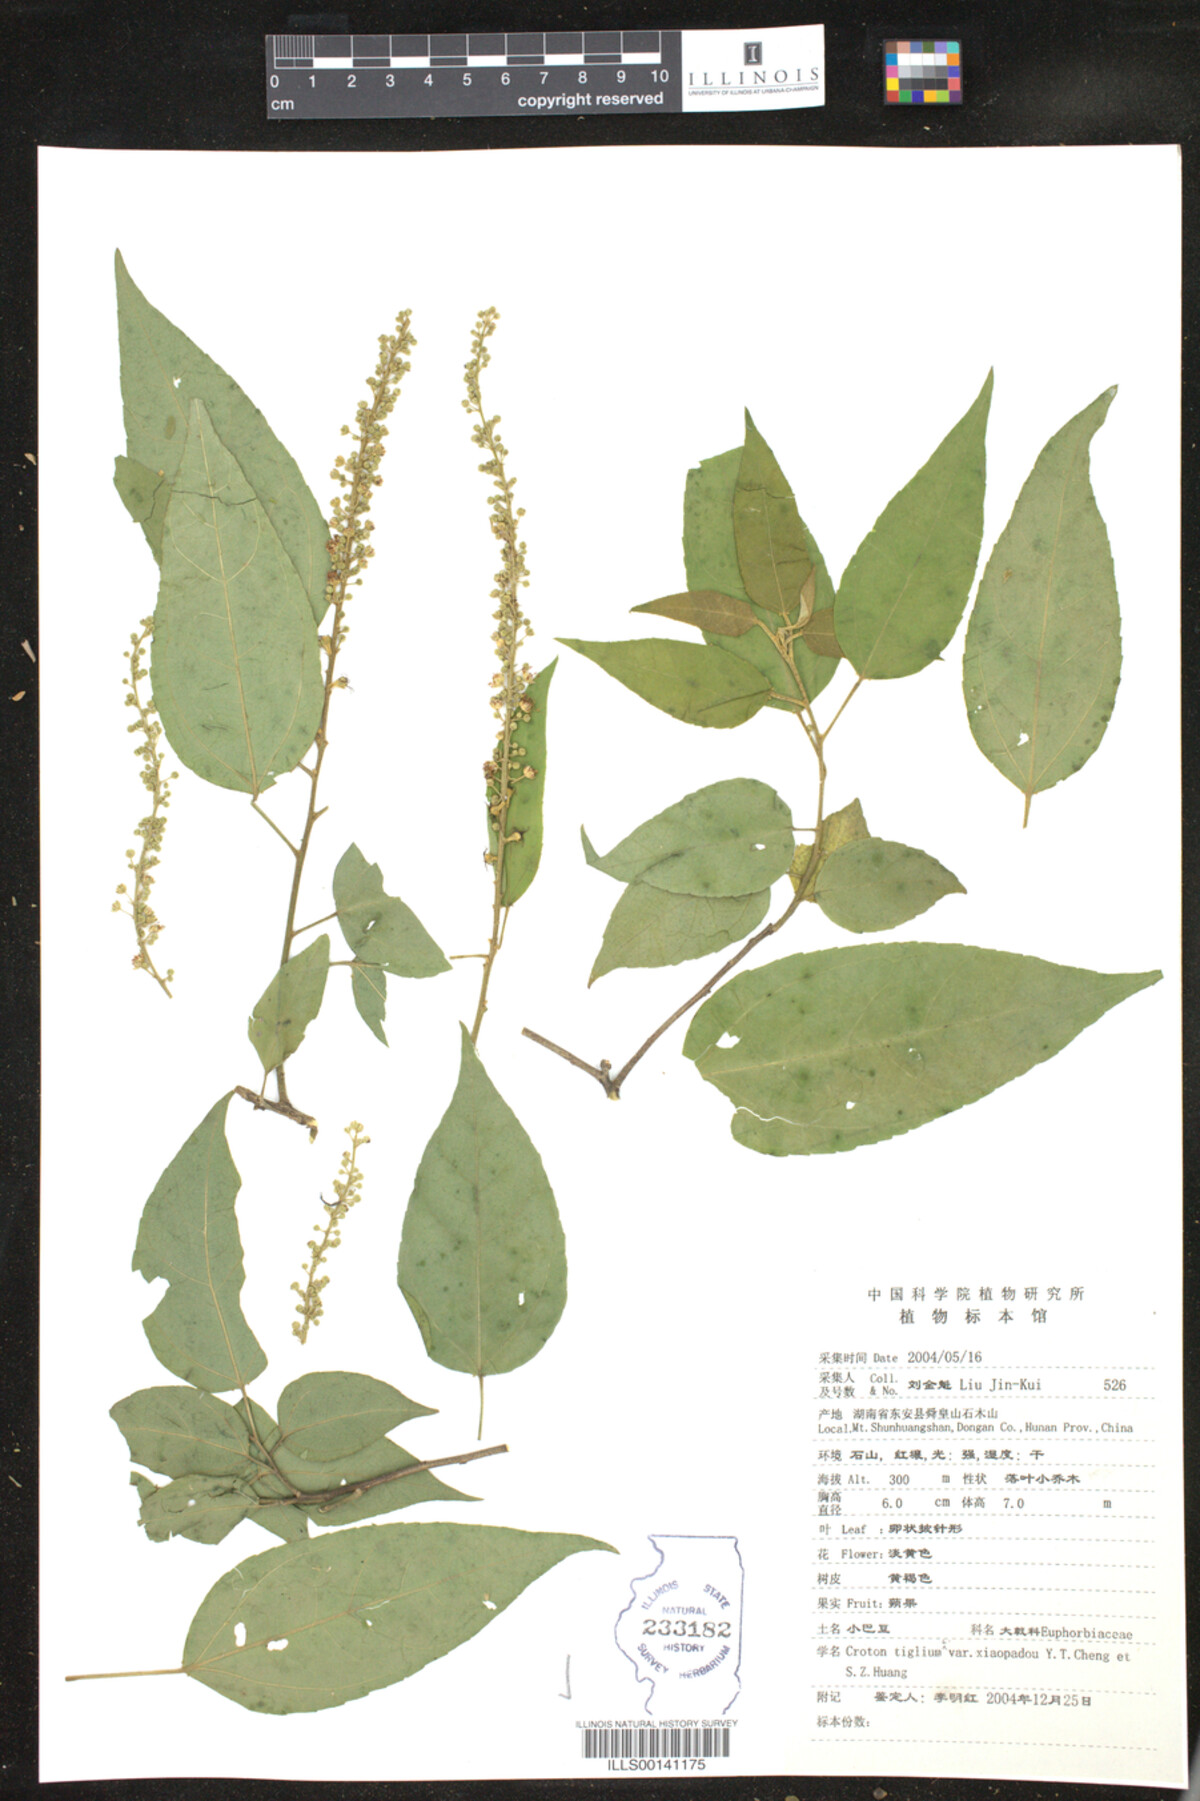 Croton tiglium var. xiaopadou image